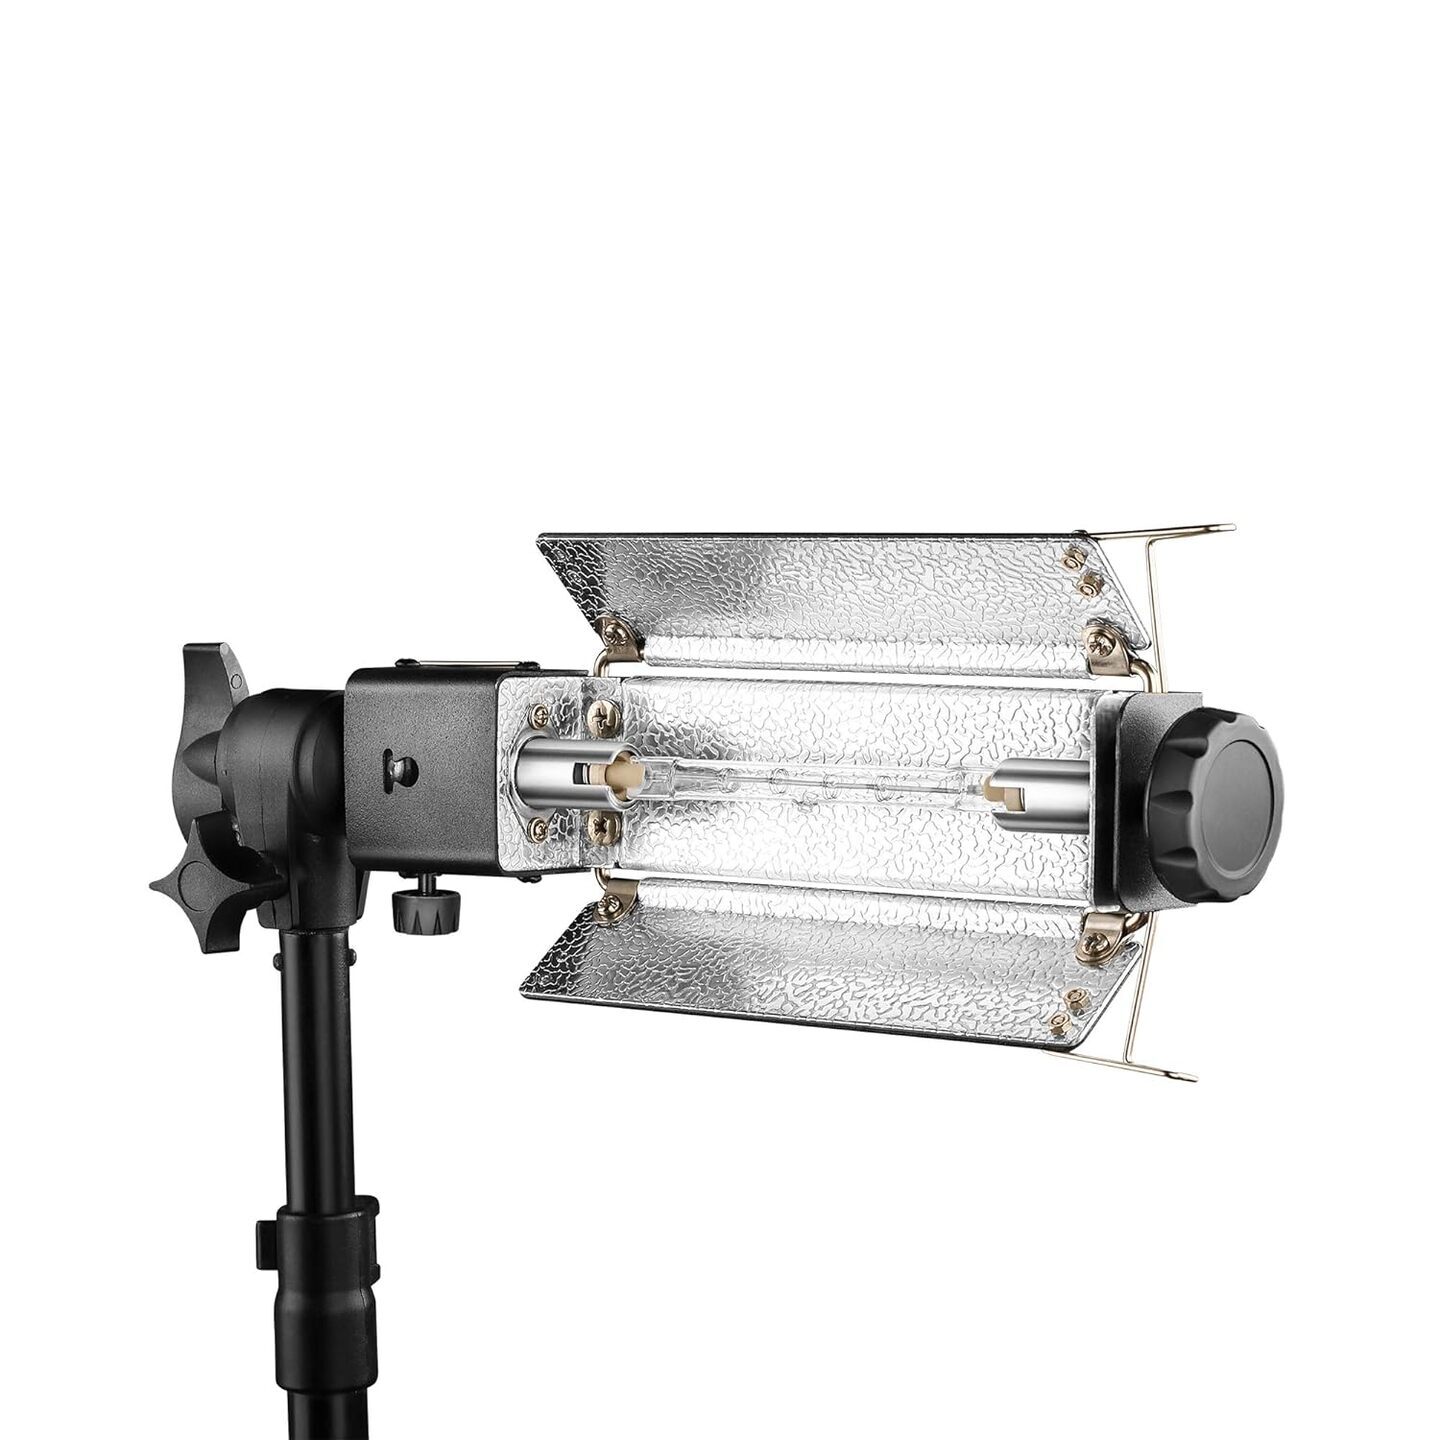 Digitek 1000 Watt Halogen Light for Video & Still Photography (Model - DPL 003)